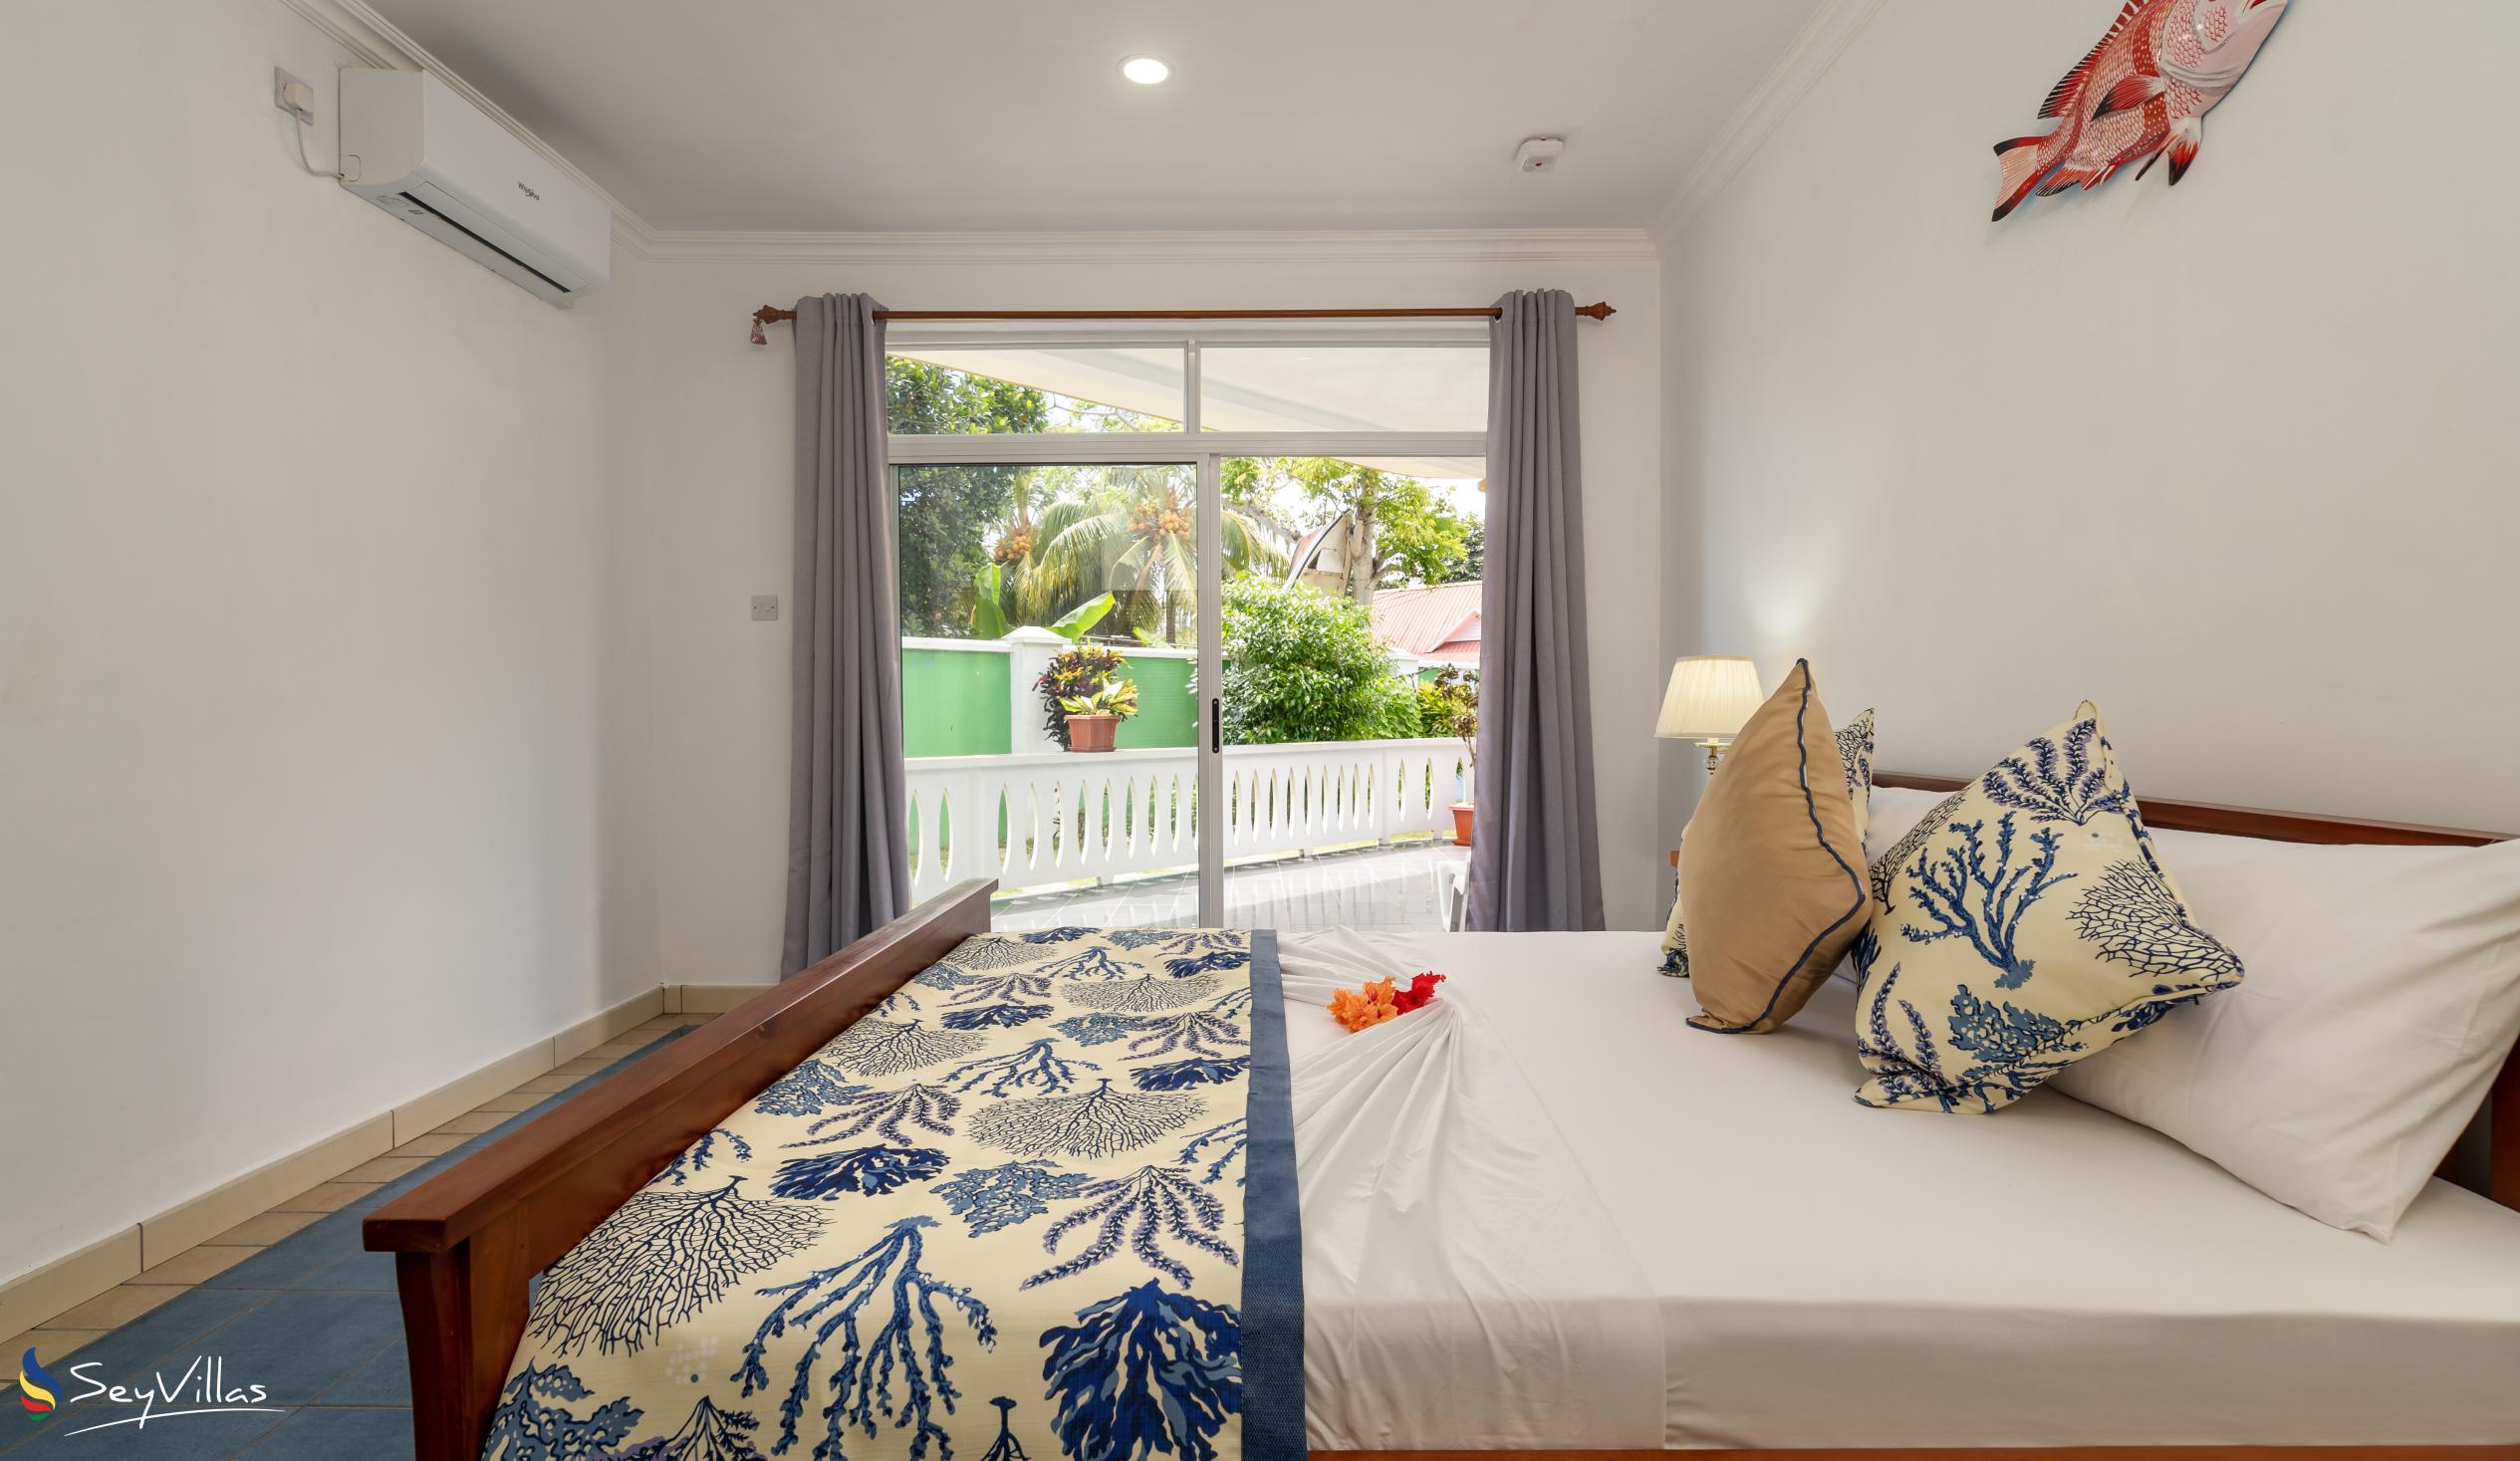 Foto 43: 340 Degrees Mountain View Apartments - Appartement avec vue sur le jardin - 1 Chambre - Mahé (Seychelles)